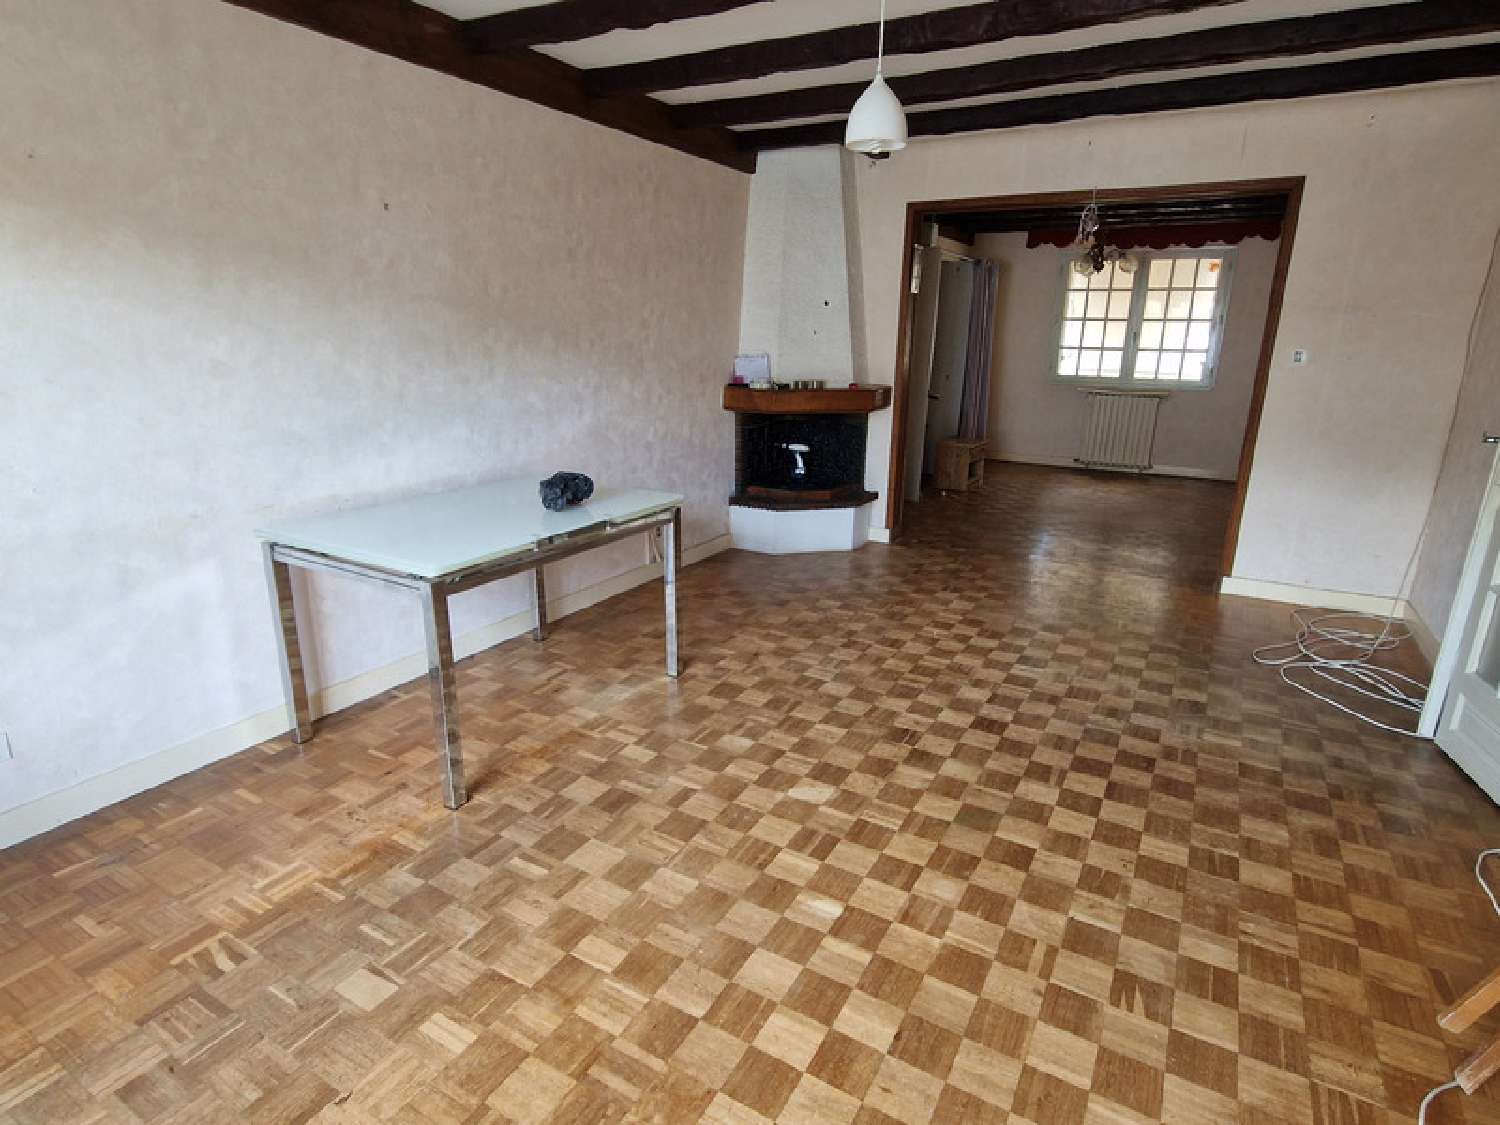  à vendre maison Tonnay-Boutonne Charente-Maritime 2